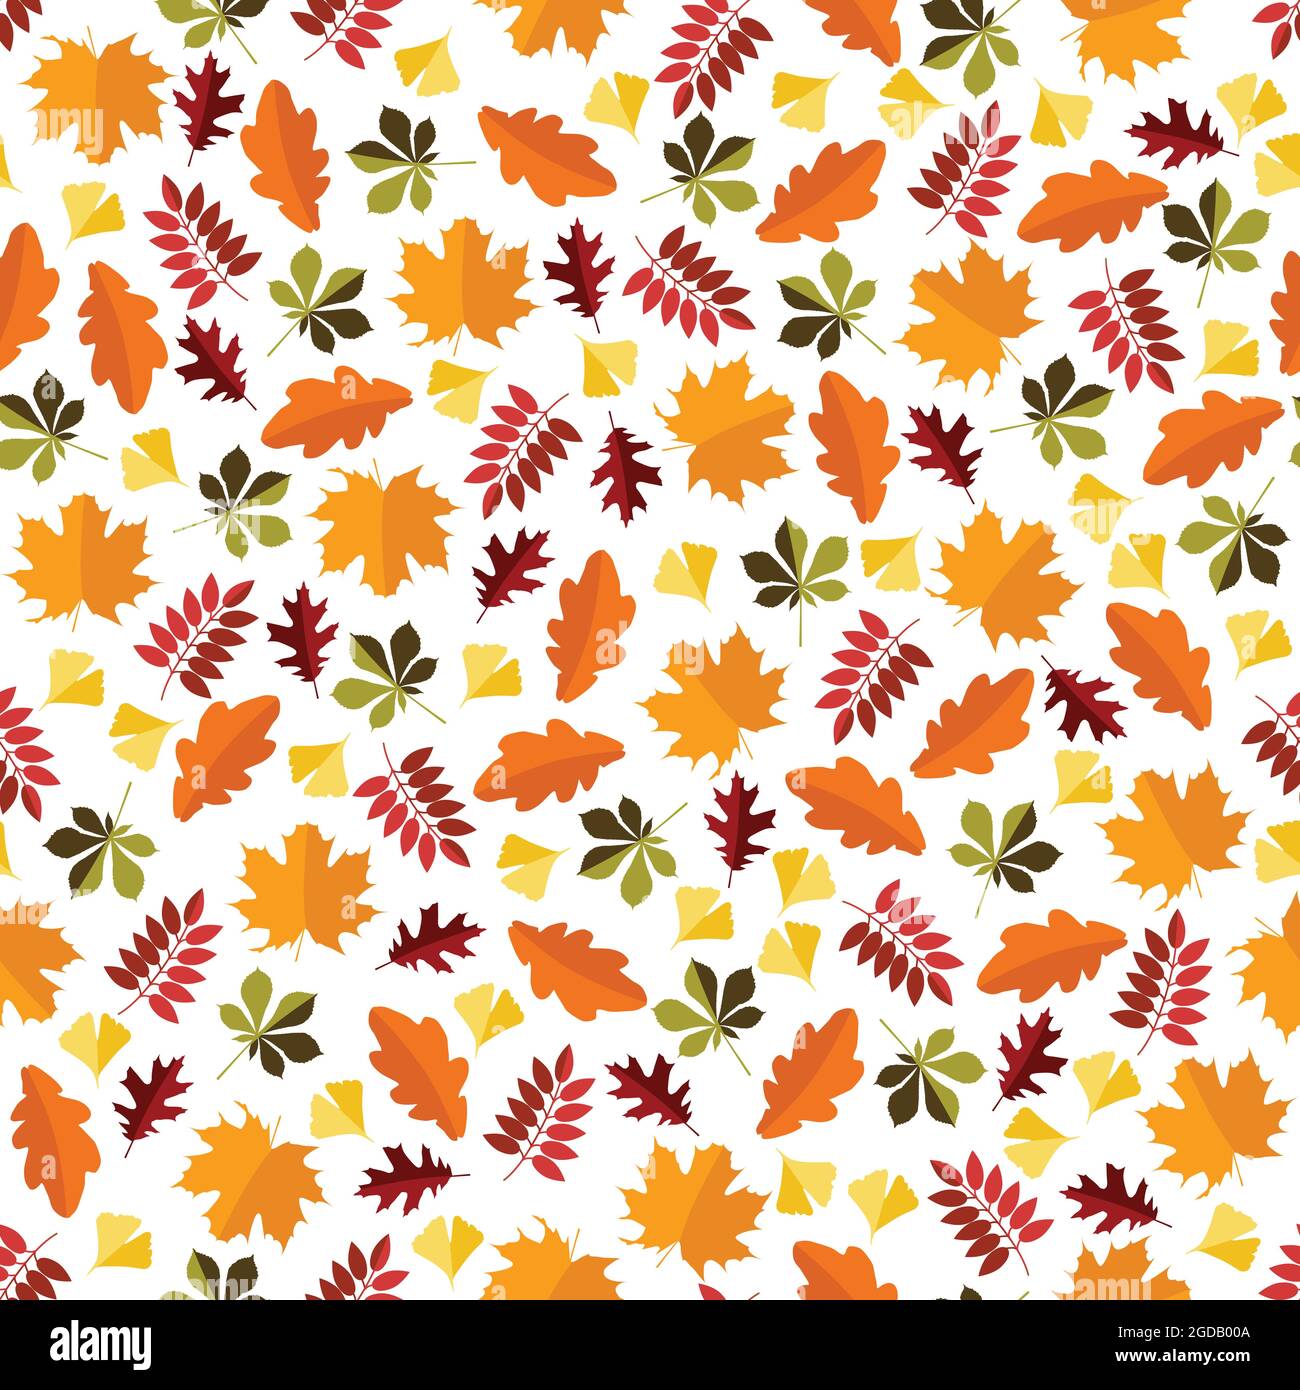 Kastanien-, Ahorn-, Eiche-, Esche- und Gingkoblätter auf transparentem Hintergrund. Die Blätter sind in zwei Farbnuancen derselben Farbe gefärbt. Stock Vektor